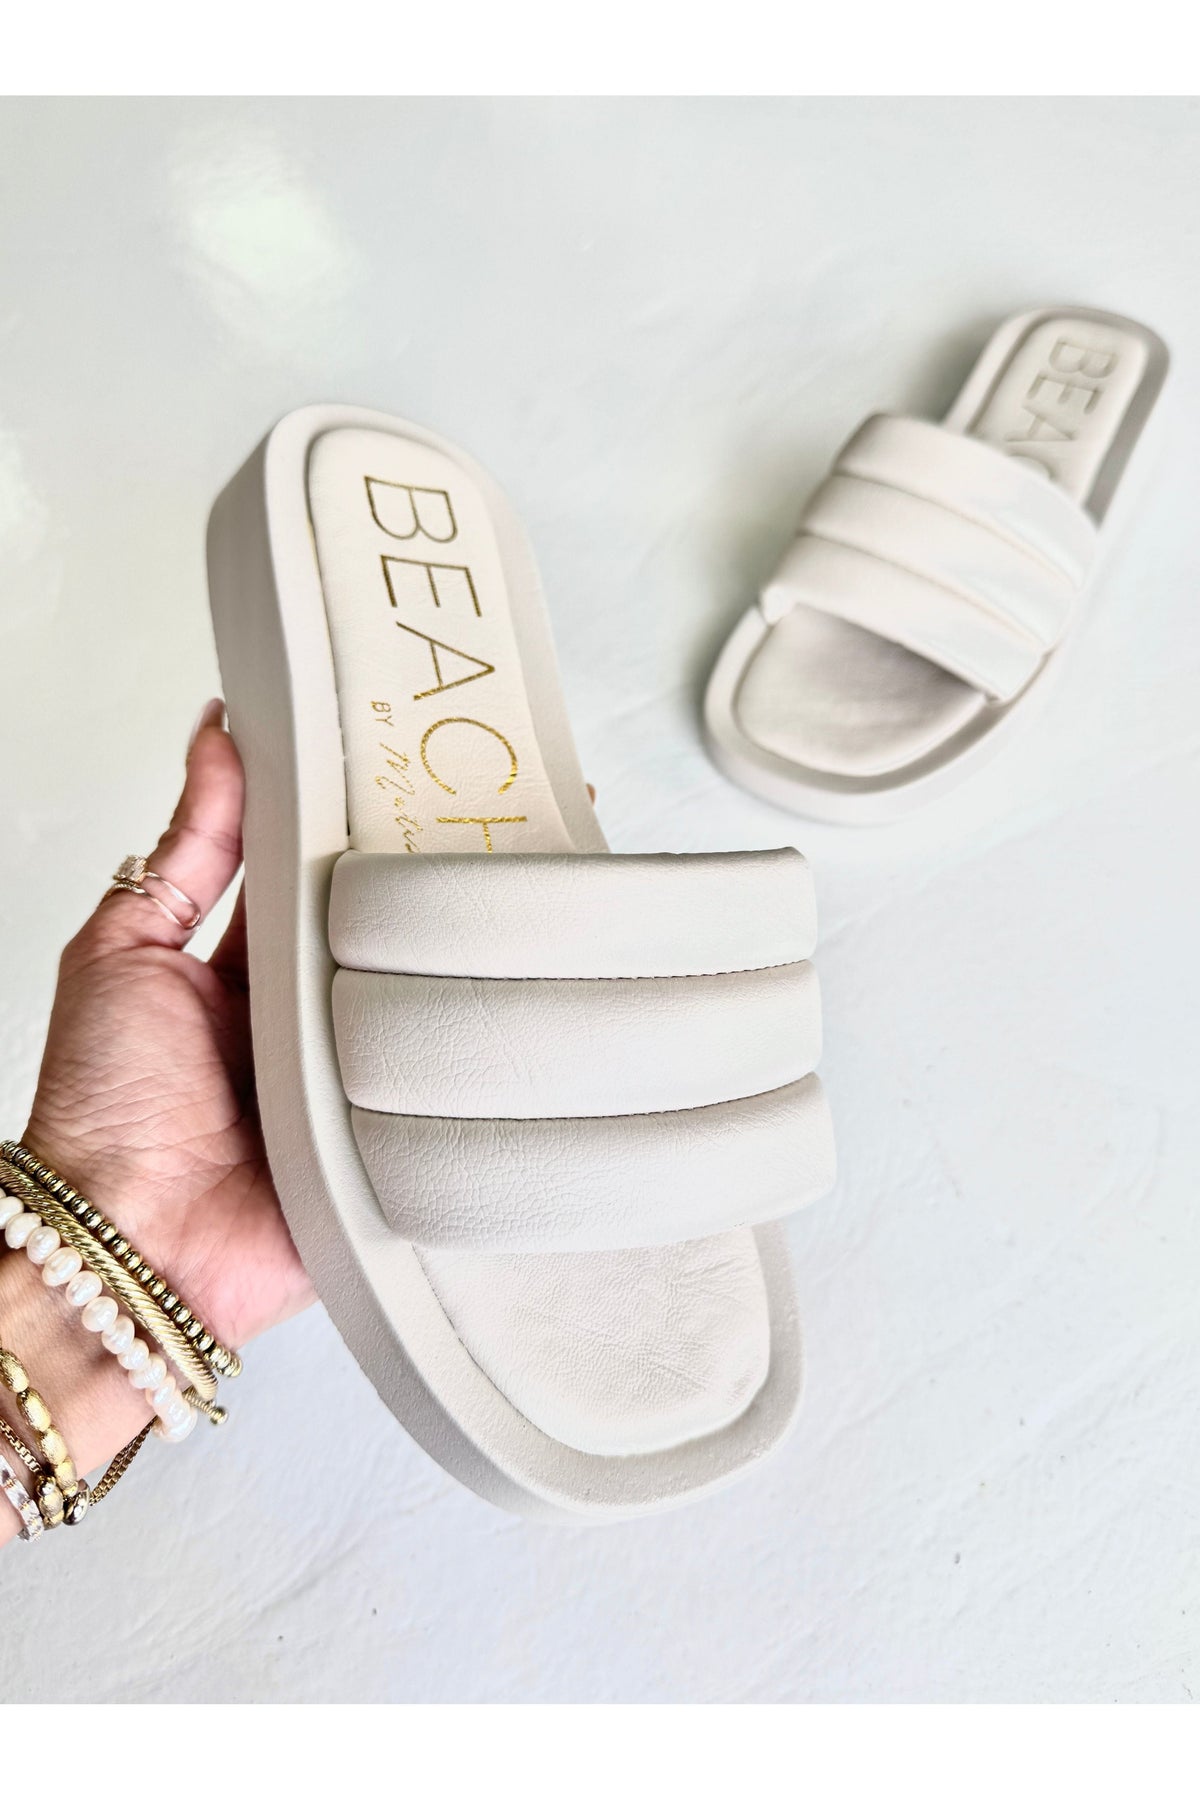 Pax Slide Beach Sandal-Shoes-KCoutureBoutique, women's boutique in Bossier City, Louisiana